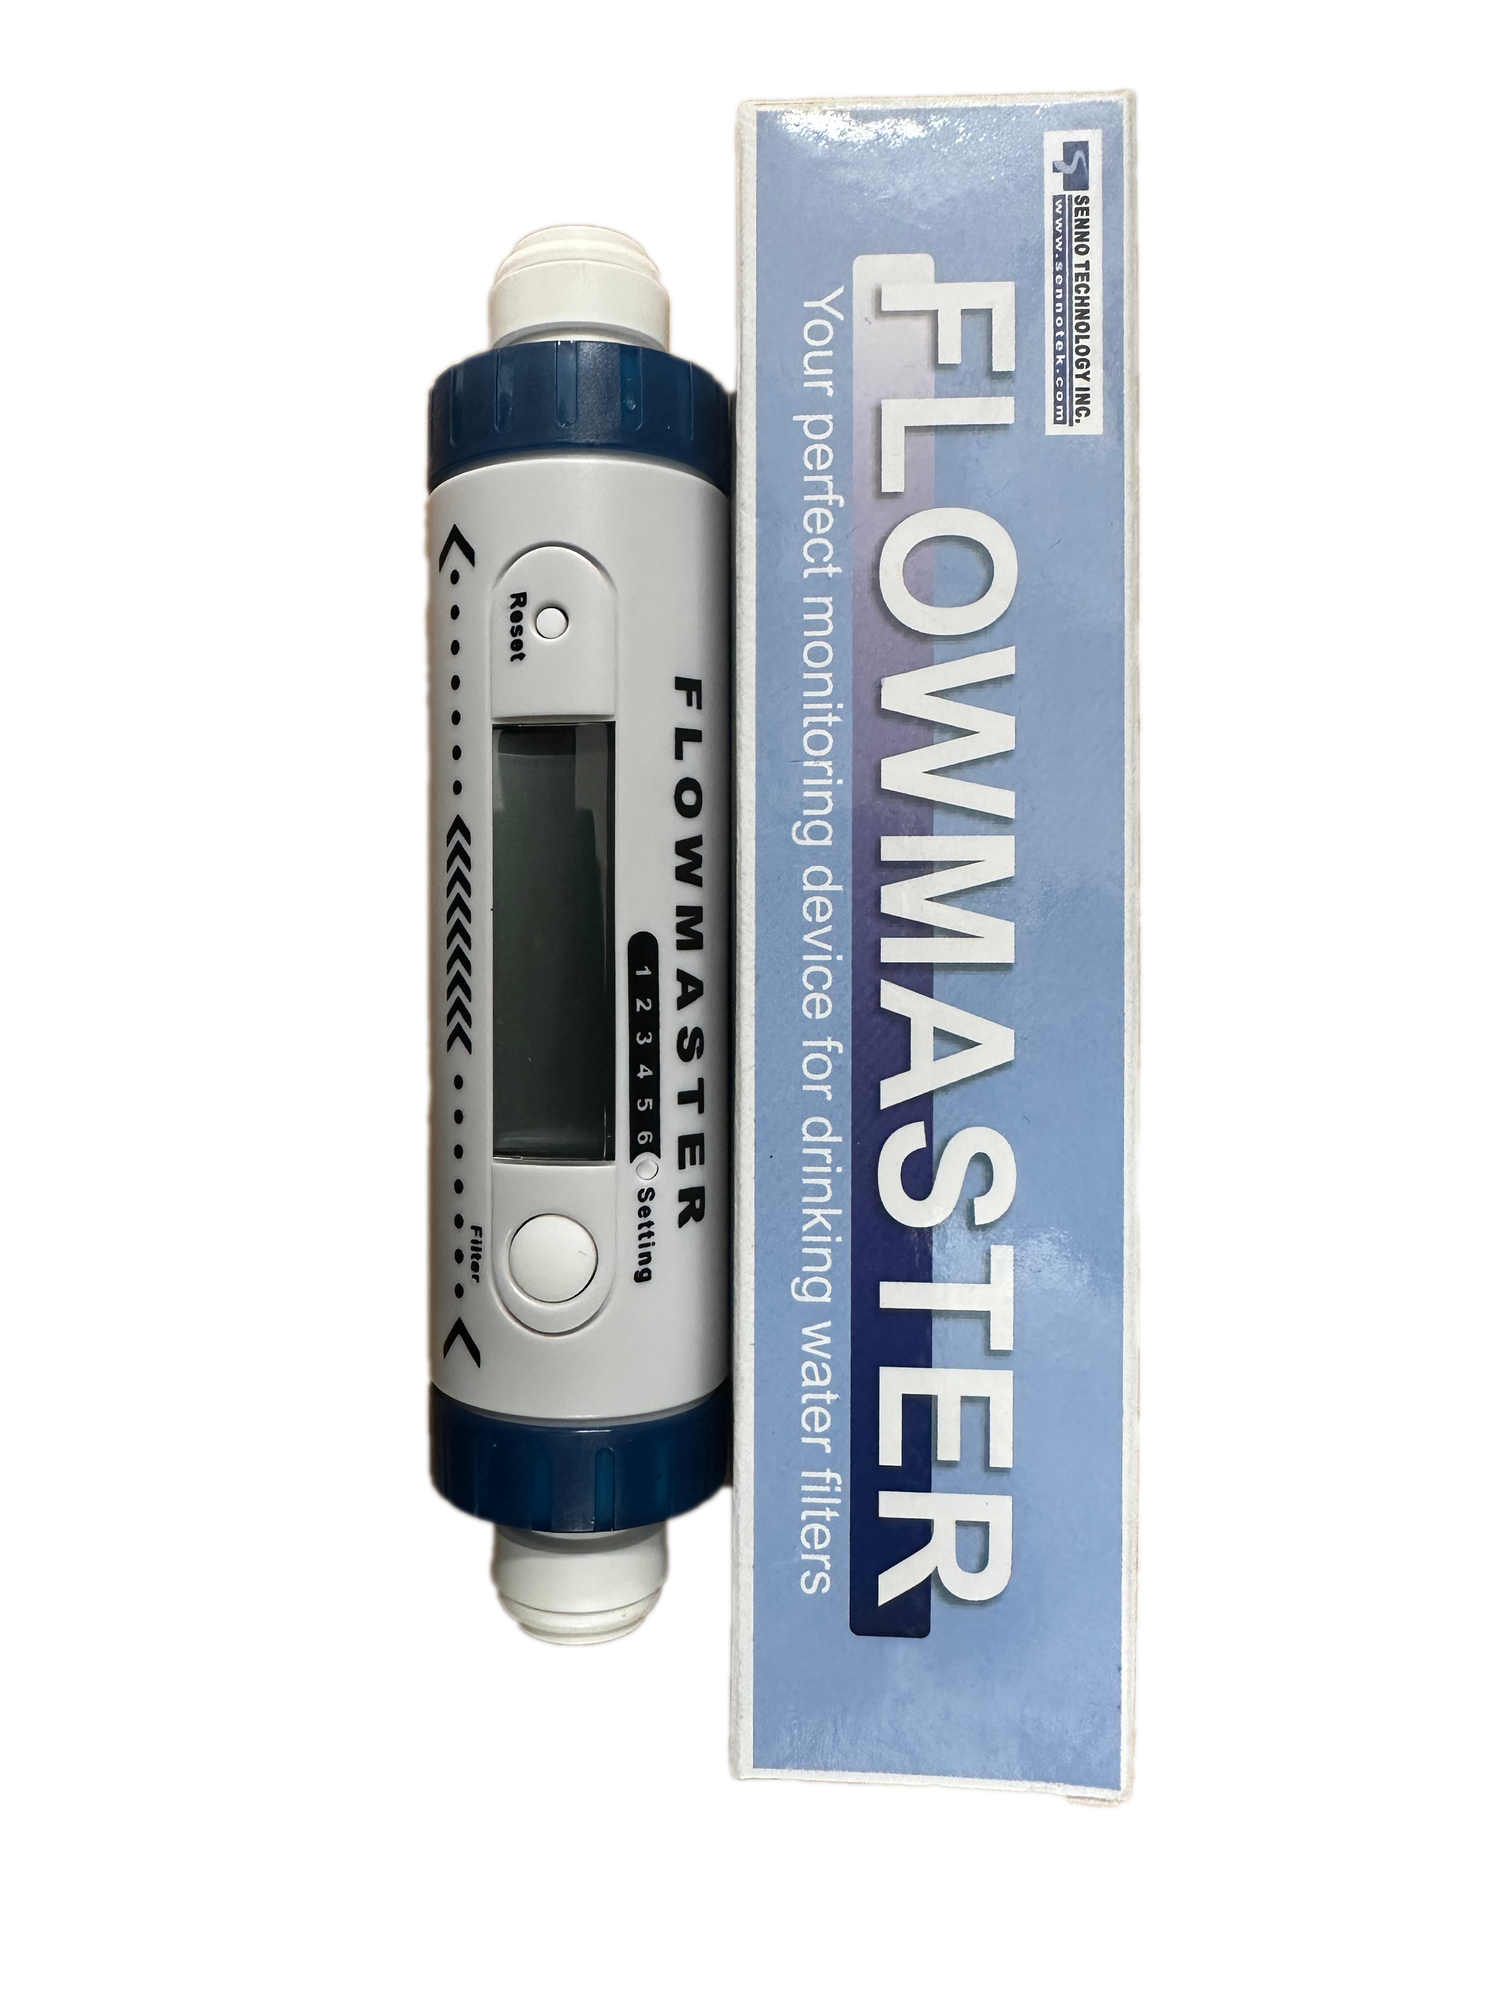 HydroLogic Flowmaster Meter (HL19014)